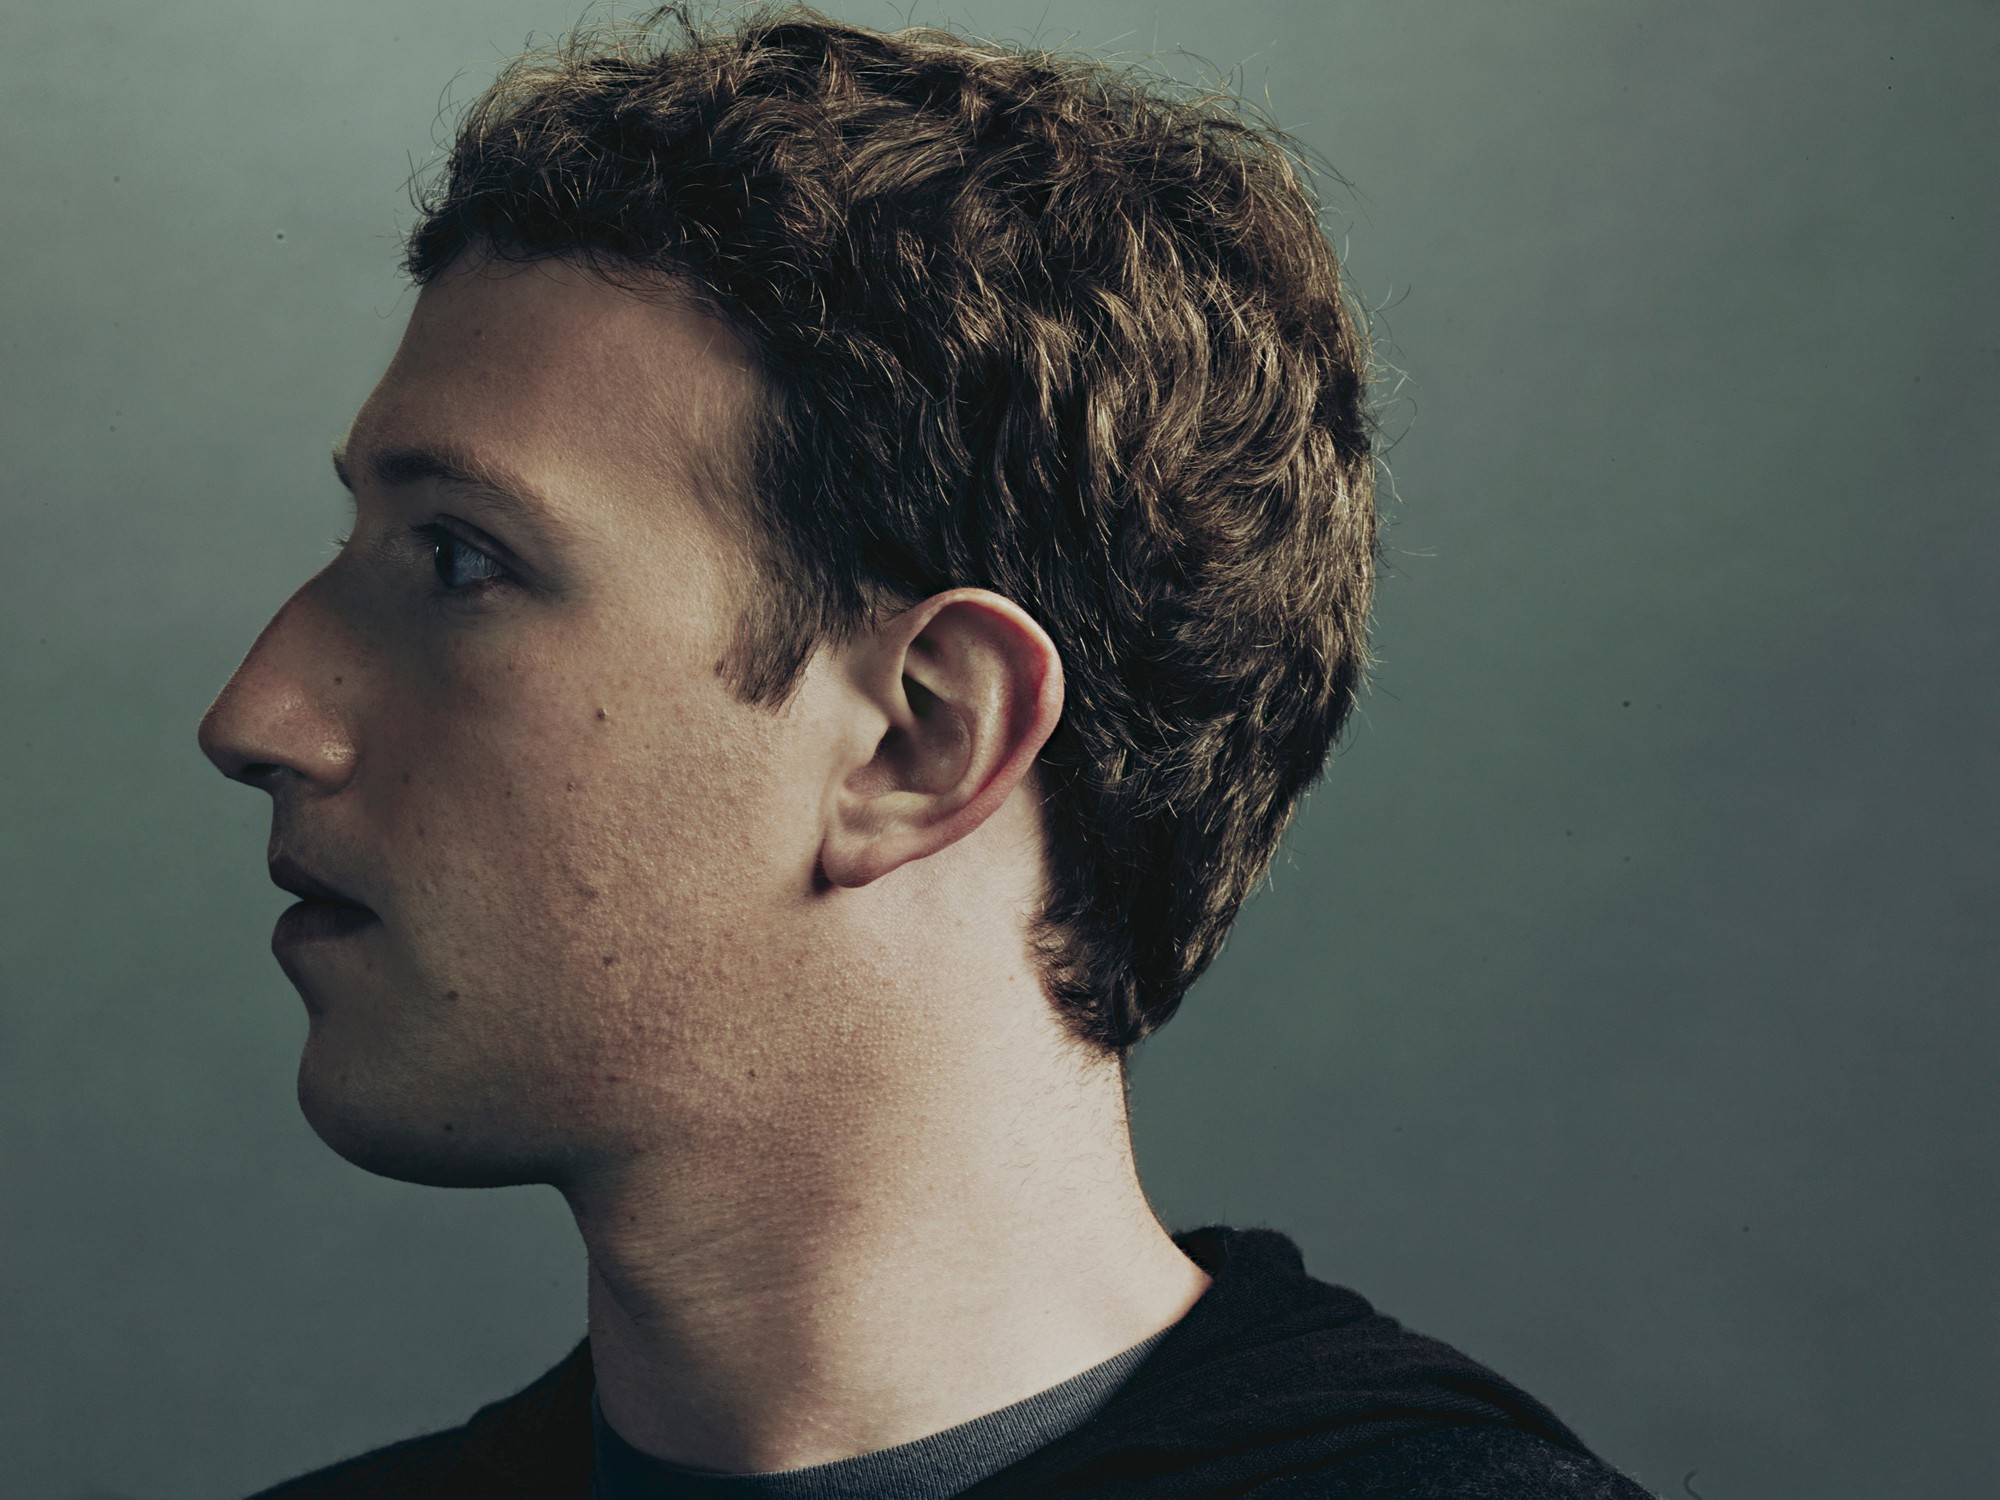 Bão sa thải lần 2 trong giới công nghệ bắt đầu: Học theo bẫy ăn xổi 1.000 tỷ USD của Mark Zuckerberg, các công ty không tập trung sáng tạo mà chỉ lo đuổi việc, hàng chục nghìn lao động sẽ sớm mất việc- Ảnh 2.